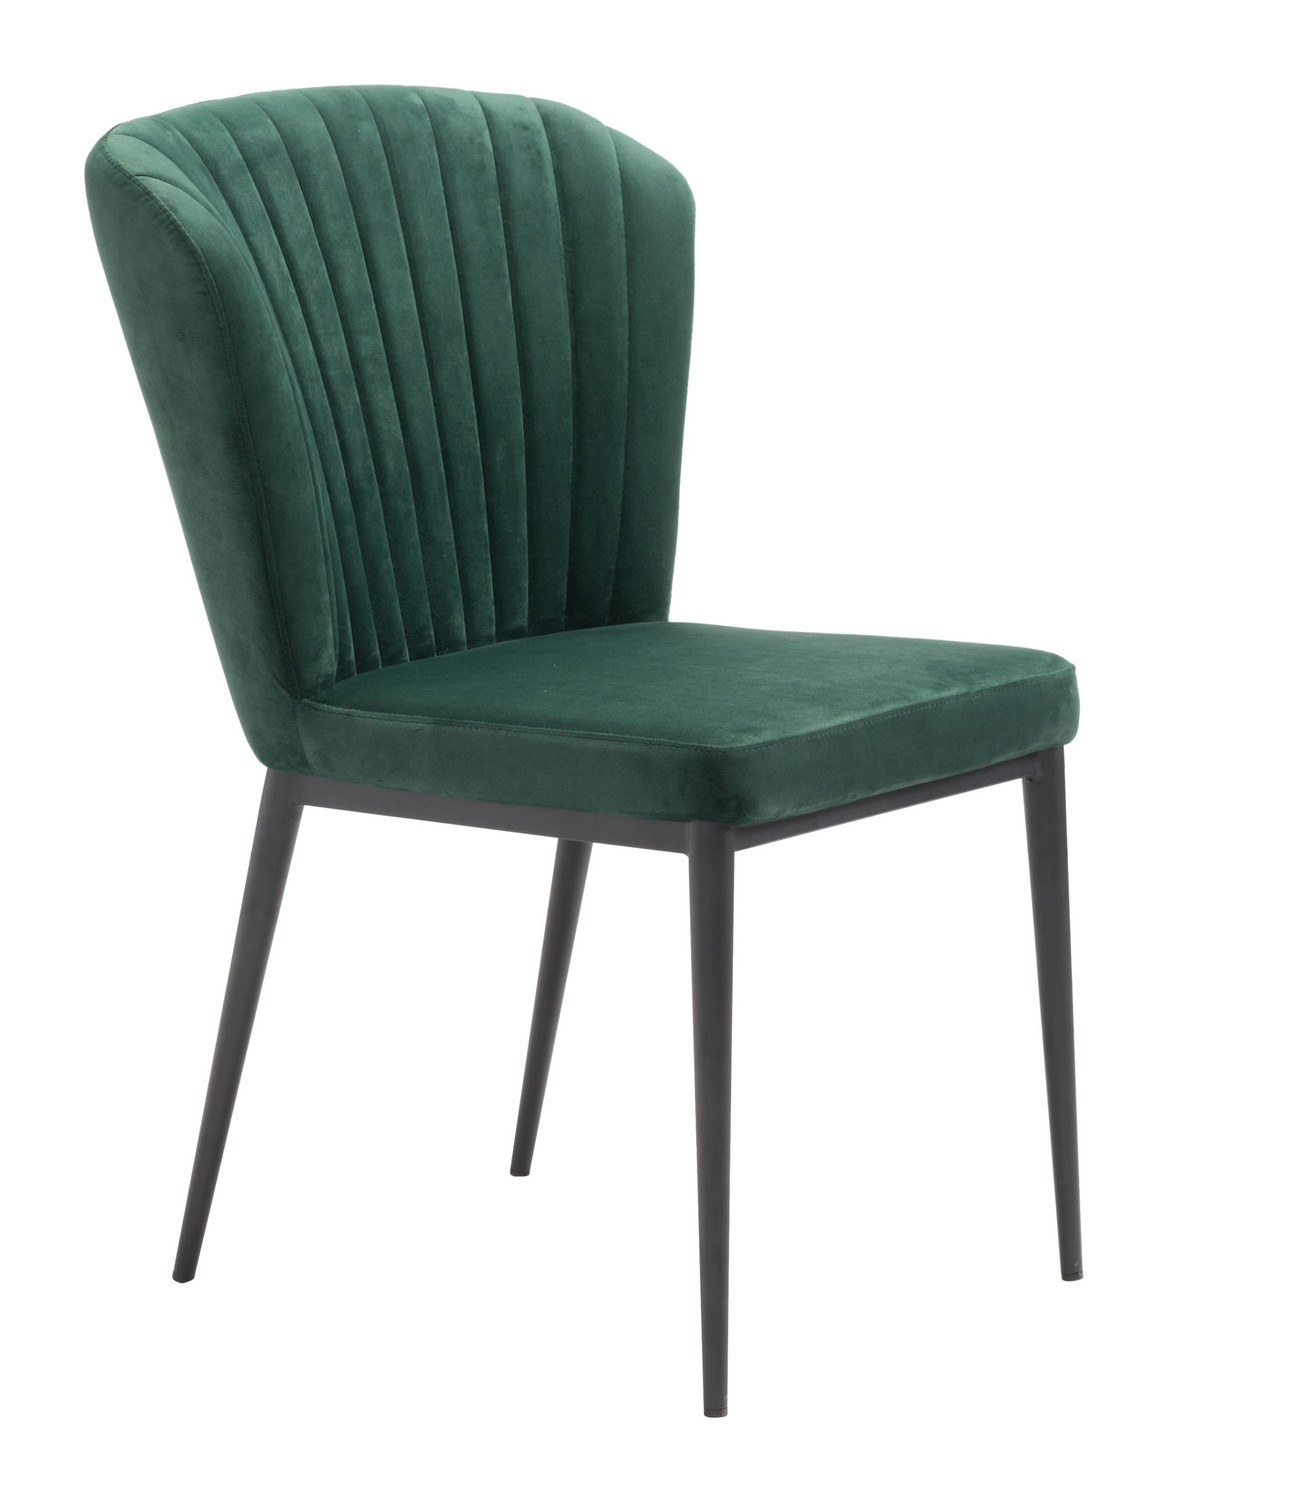 22.4" x 23.6" x 33.9" Green, Velvet, Stainless Steel, Dining Chair - Set of 2